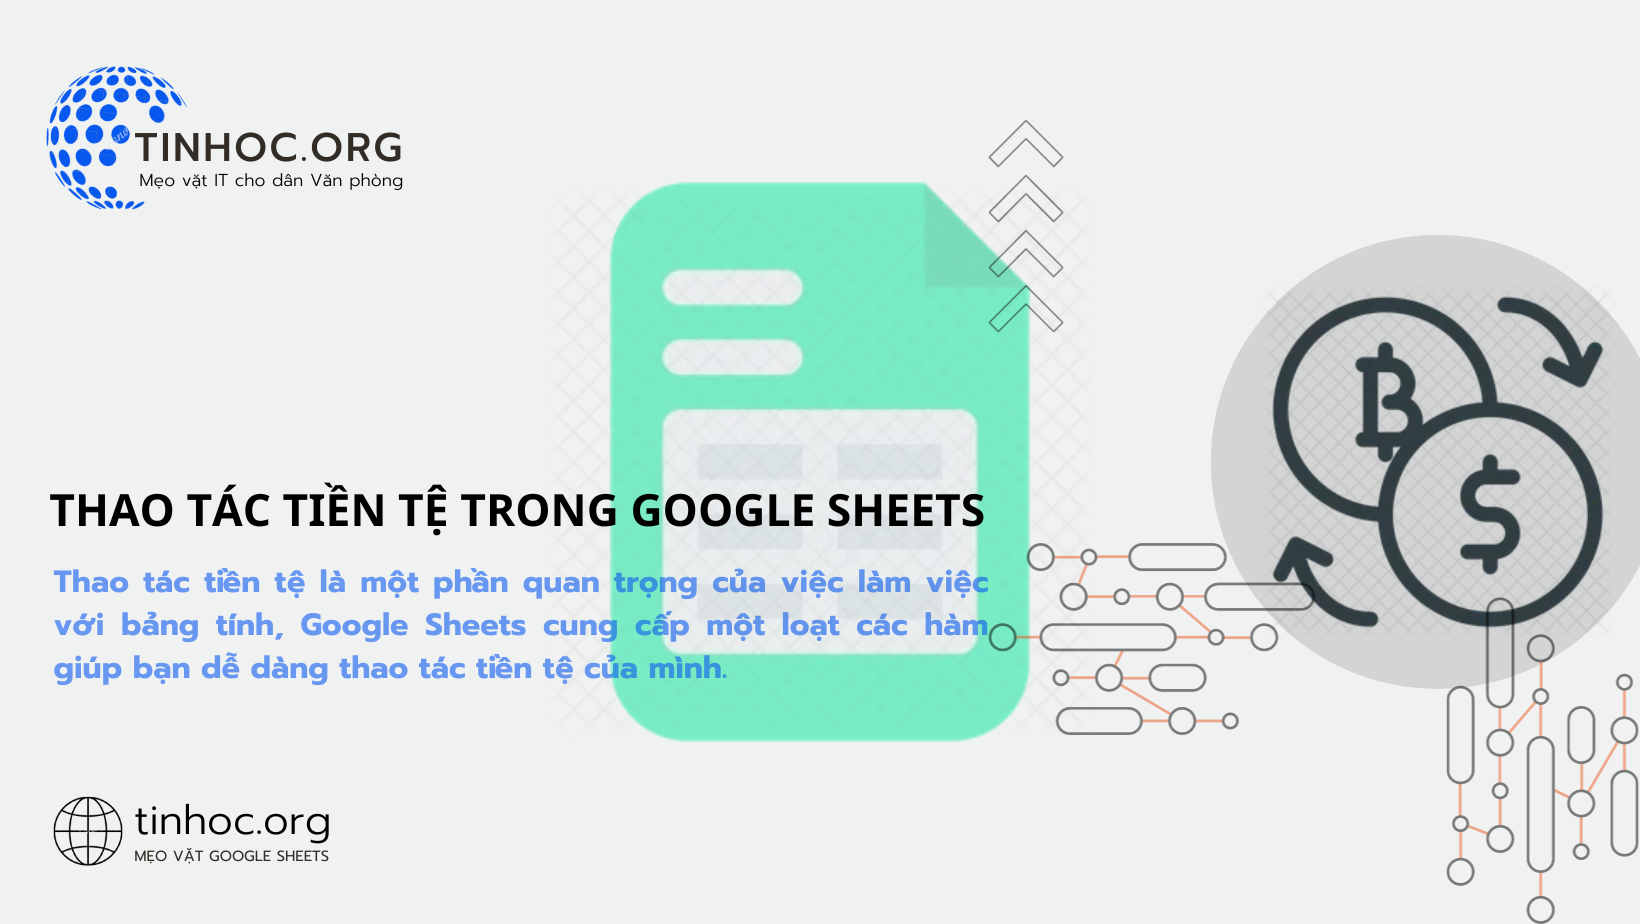 Thao tác tiền tệ là một phần quan trọng của việc làm việc với bảng tính, Google Sheets cung cấp một loạt các hàm giúp bạn dễ dàng thao tác tiền tệ của mình.